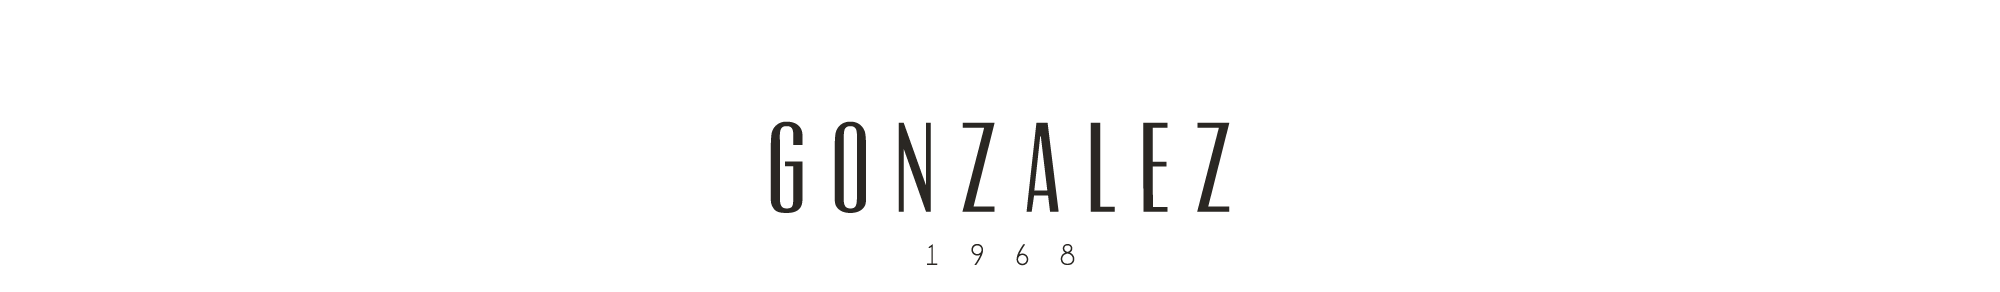 GONZALEZ 1968 - jewelry / joyería